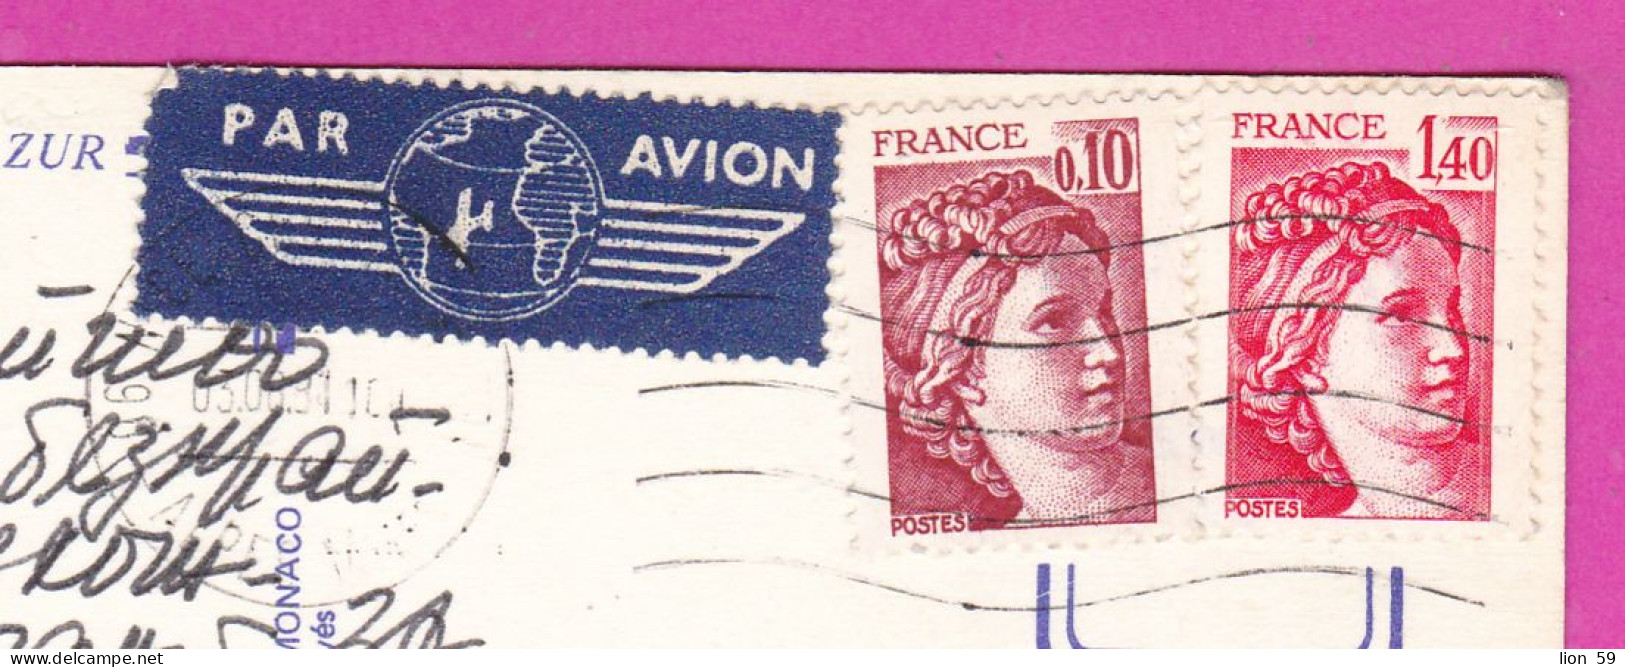 294171 / France - NICE 5 View PC 1981 Par Avion USED 0.10+1.40 Fr. Sabine De Gandon , Frankreich Francia - 1977-1981 Sabine Of Gandon